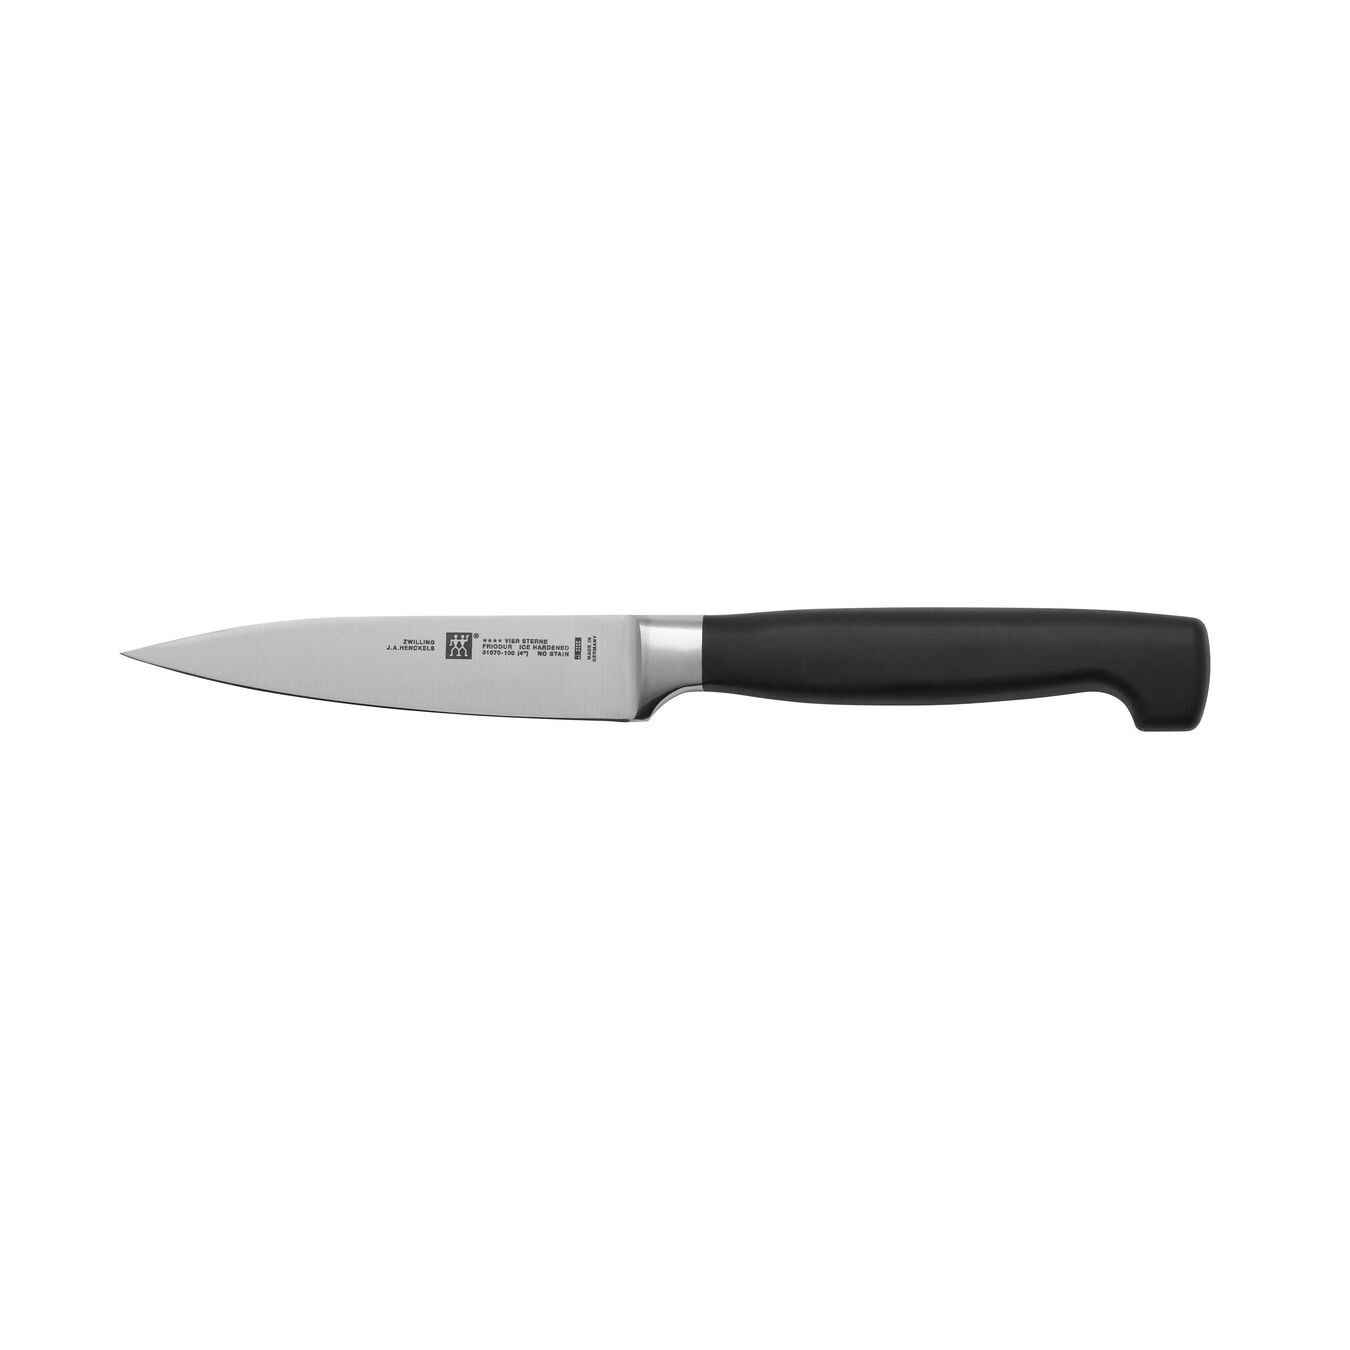 Soyma Doğrama Bıçağı | Özel Formül Çelik | 10 cm,,large 2